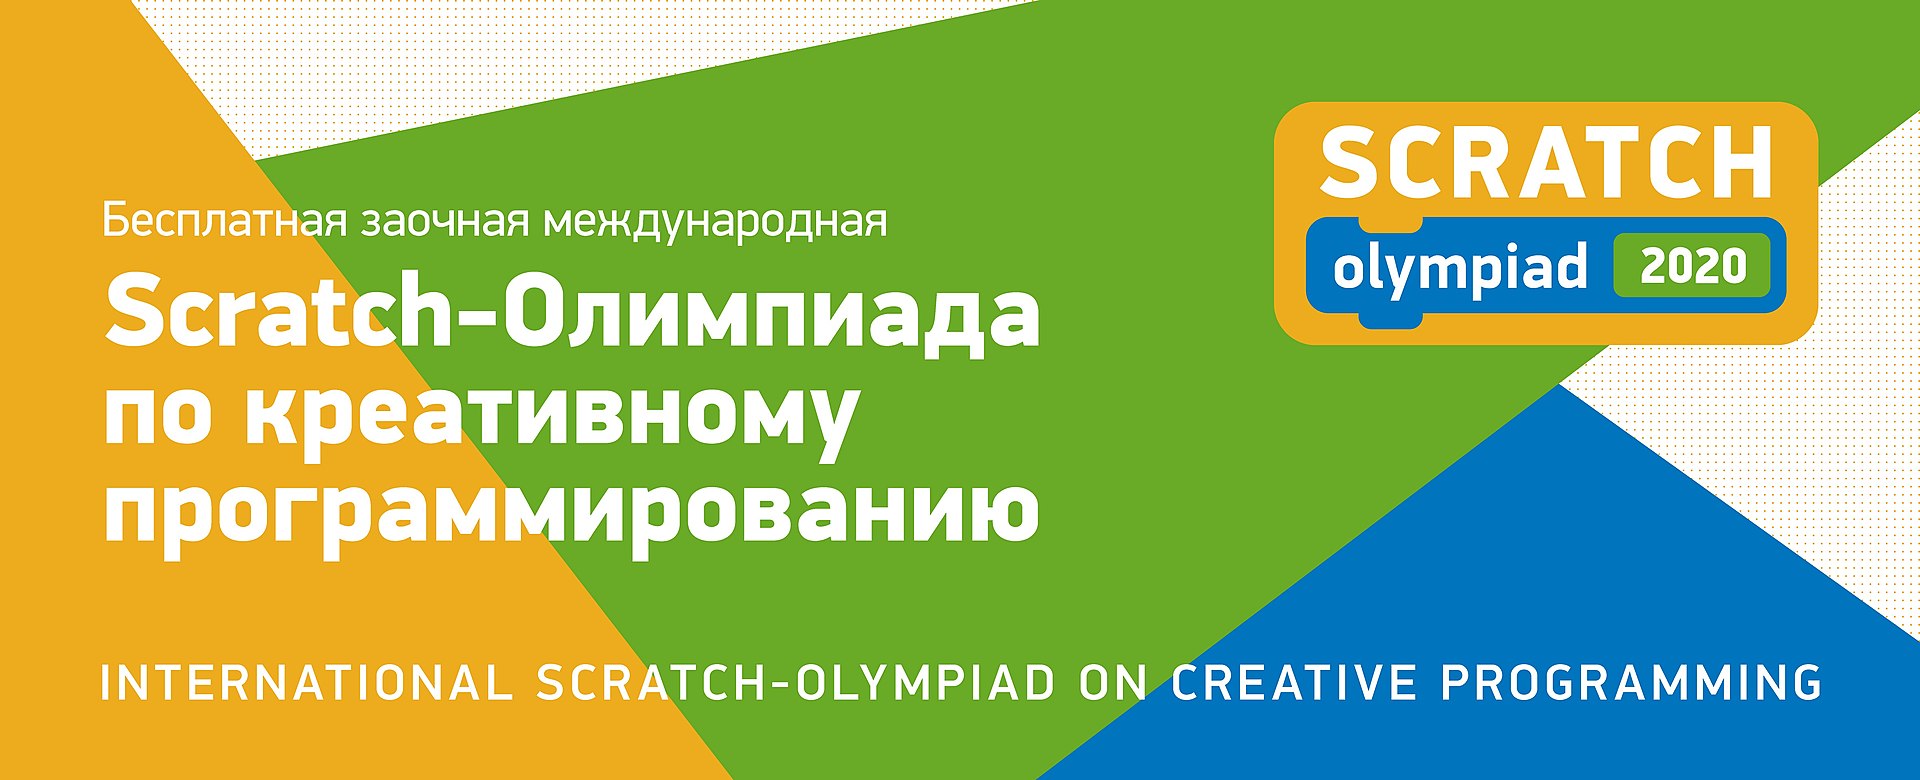 Кружковое движение НТИ и «РОББО» проведут олимпиаду по креативному программированию для школьников